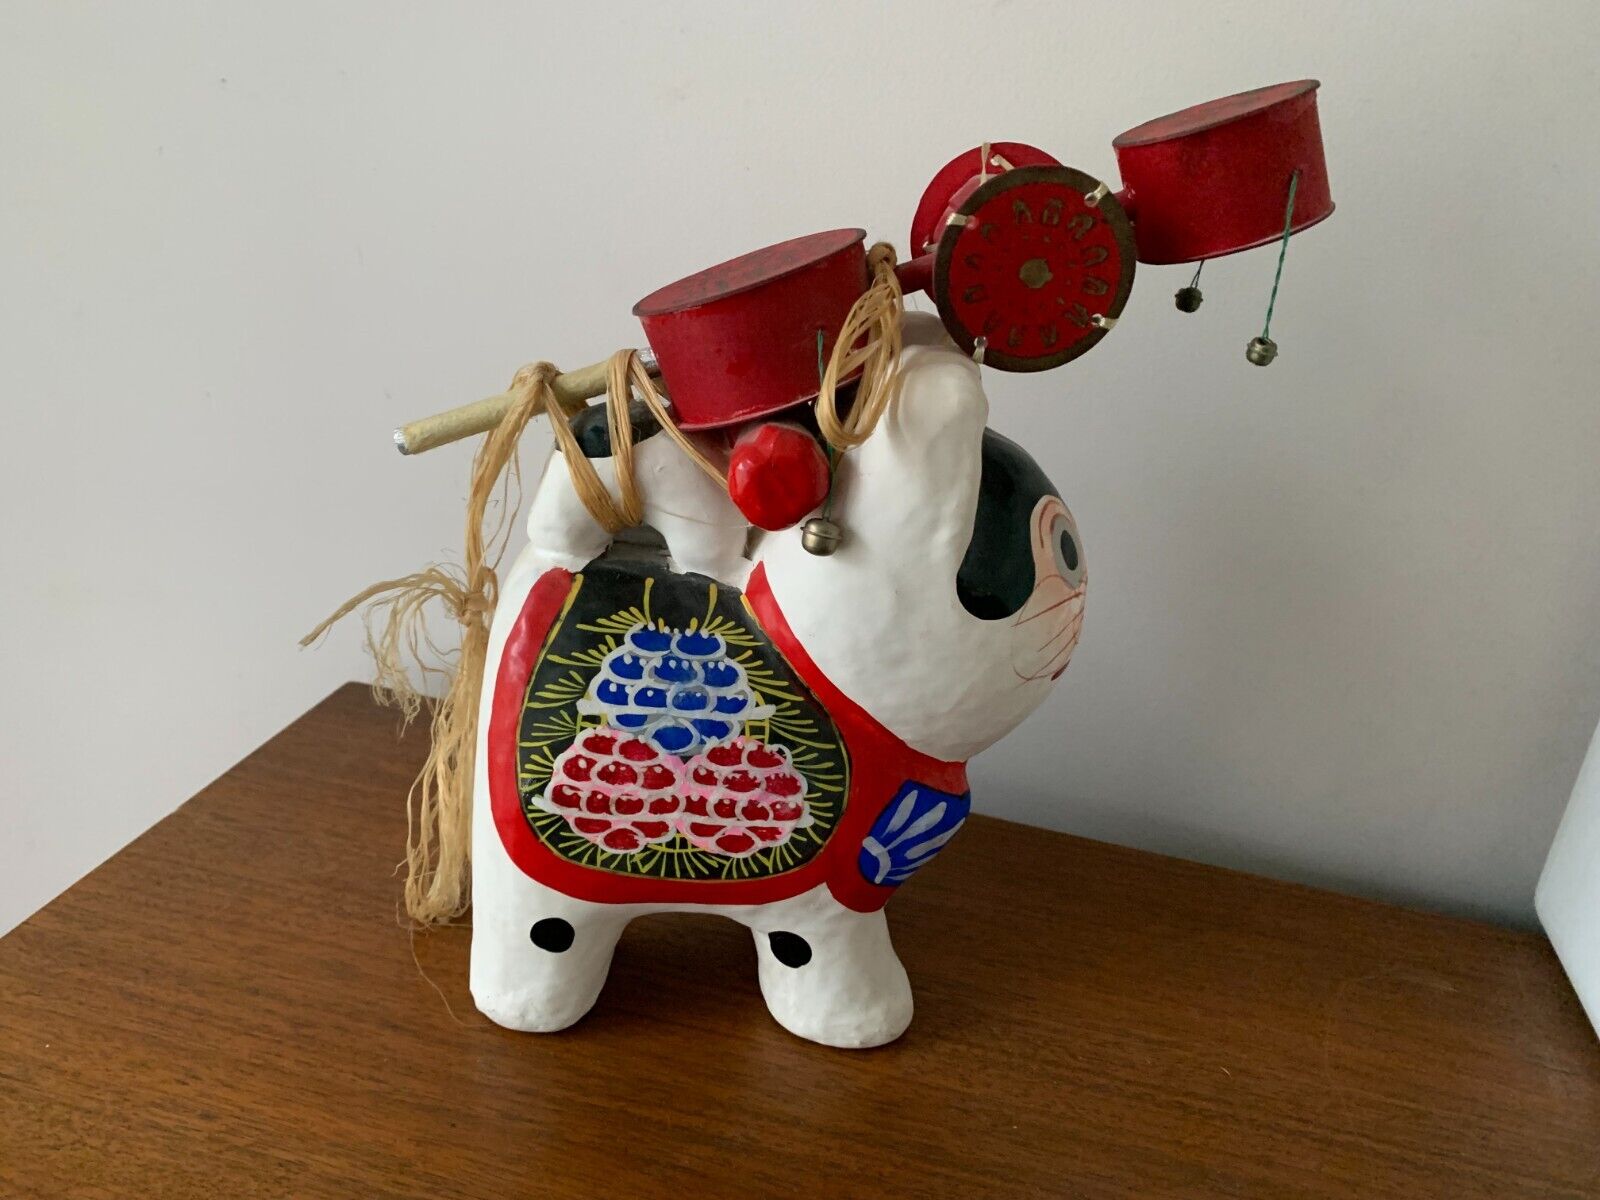 Vintage Japanese *LARGE* Paper Mache Dog Denden Taiko Inu Hariko Folk Art H:11